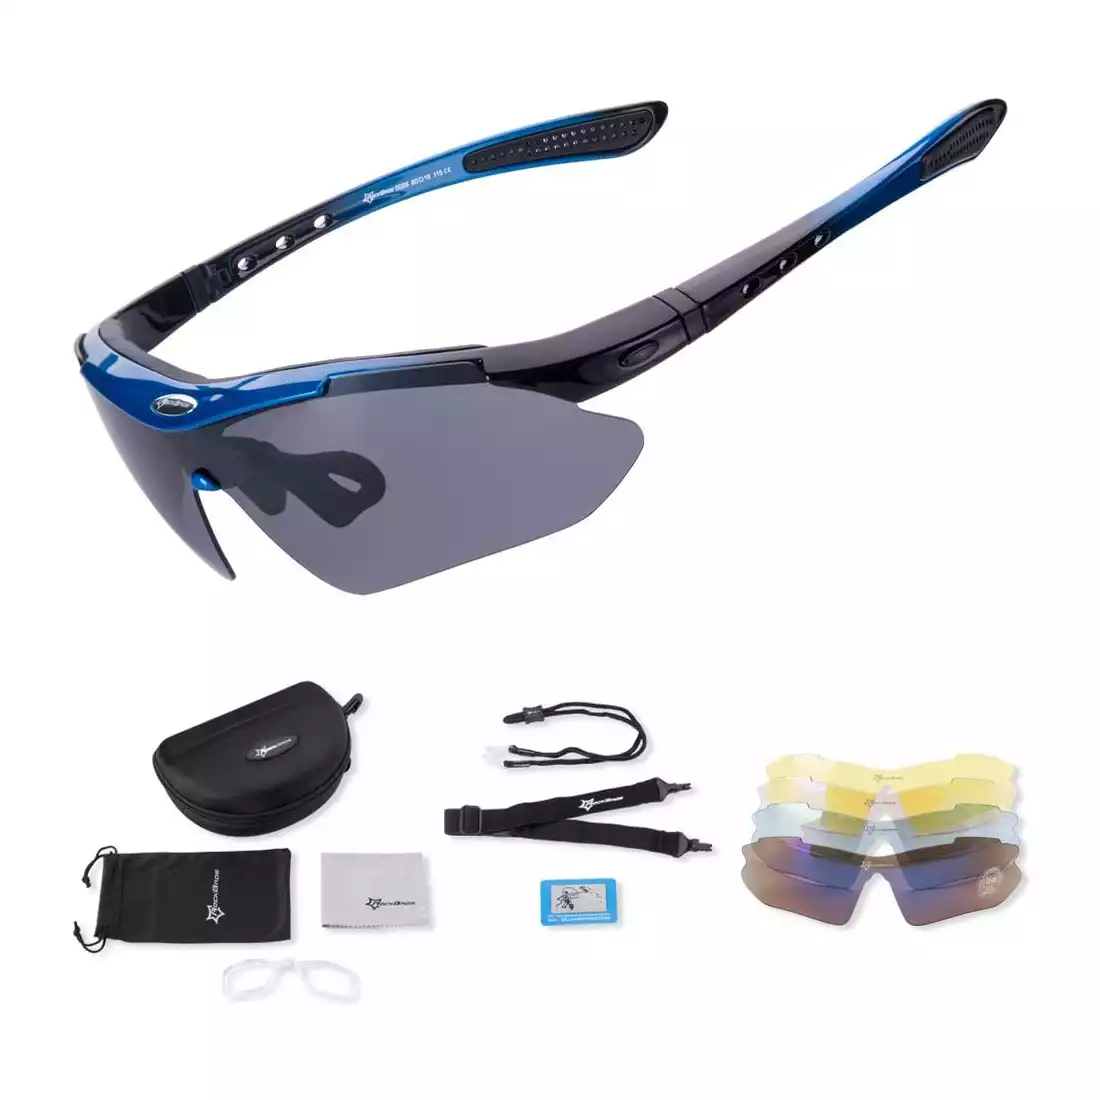 RockBros 10007 okulary rowerowe / sportowe z polaryzacją 5 soczewek wymiennych niebieskie